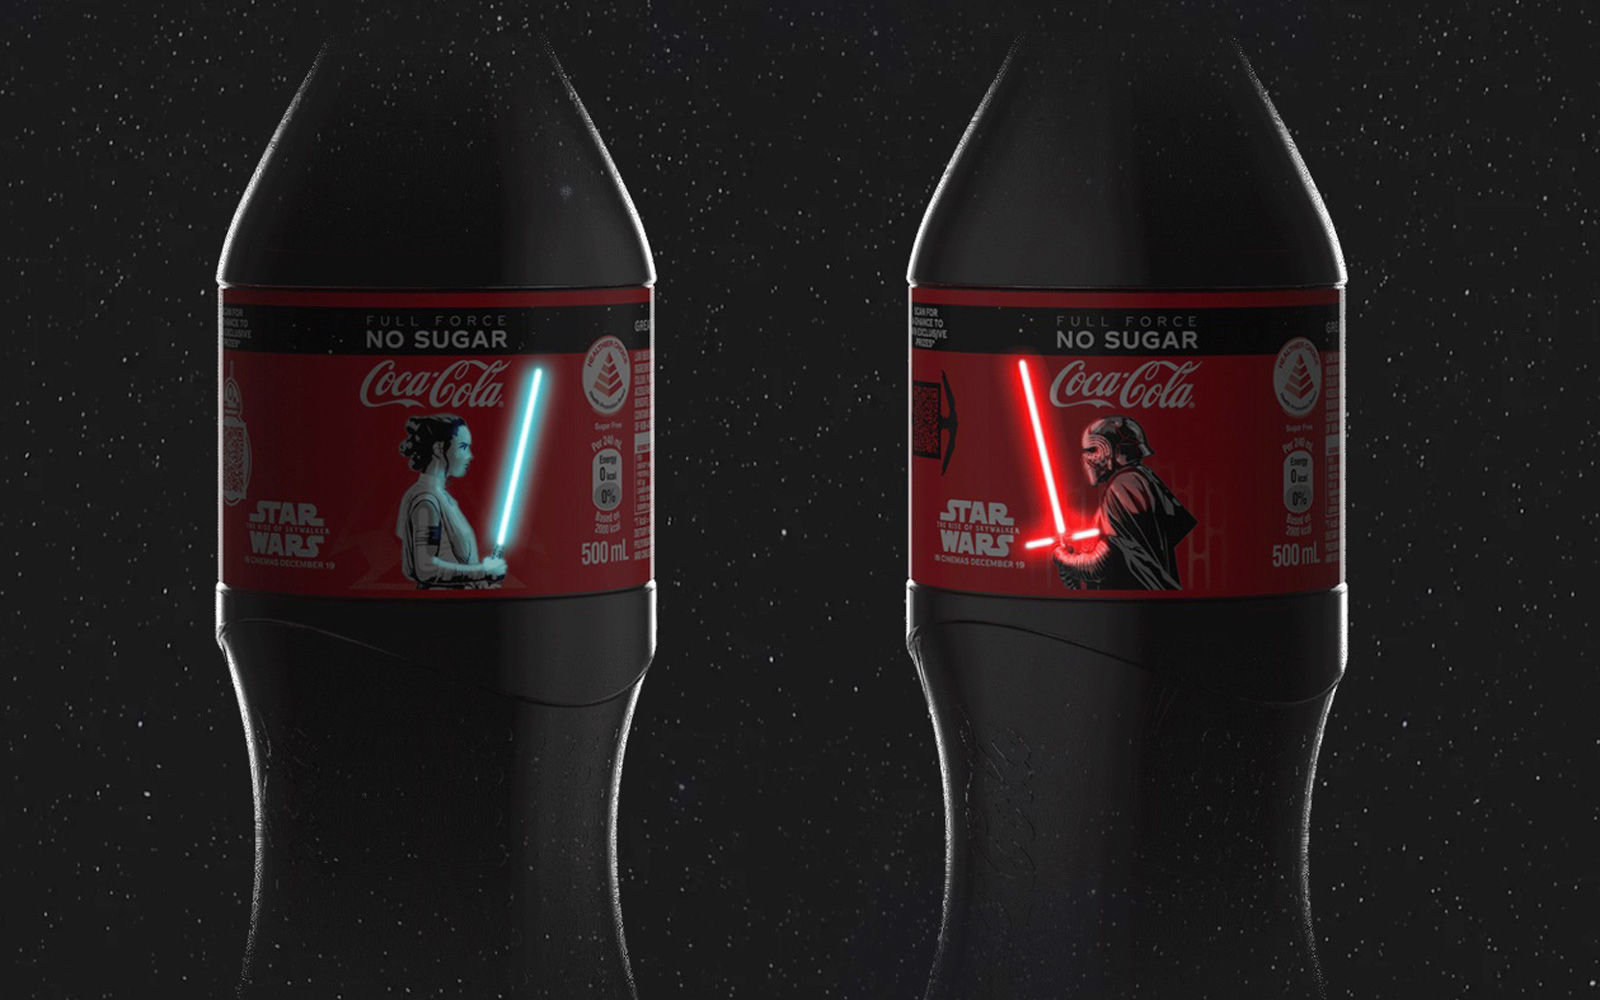 édition limitée star wars des bouteilles coca-cola